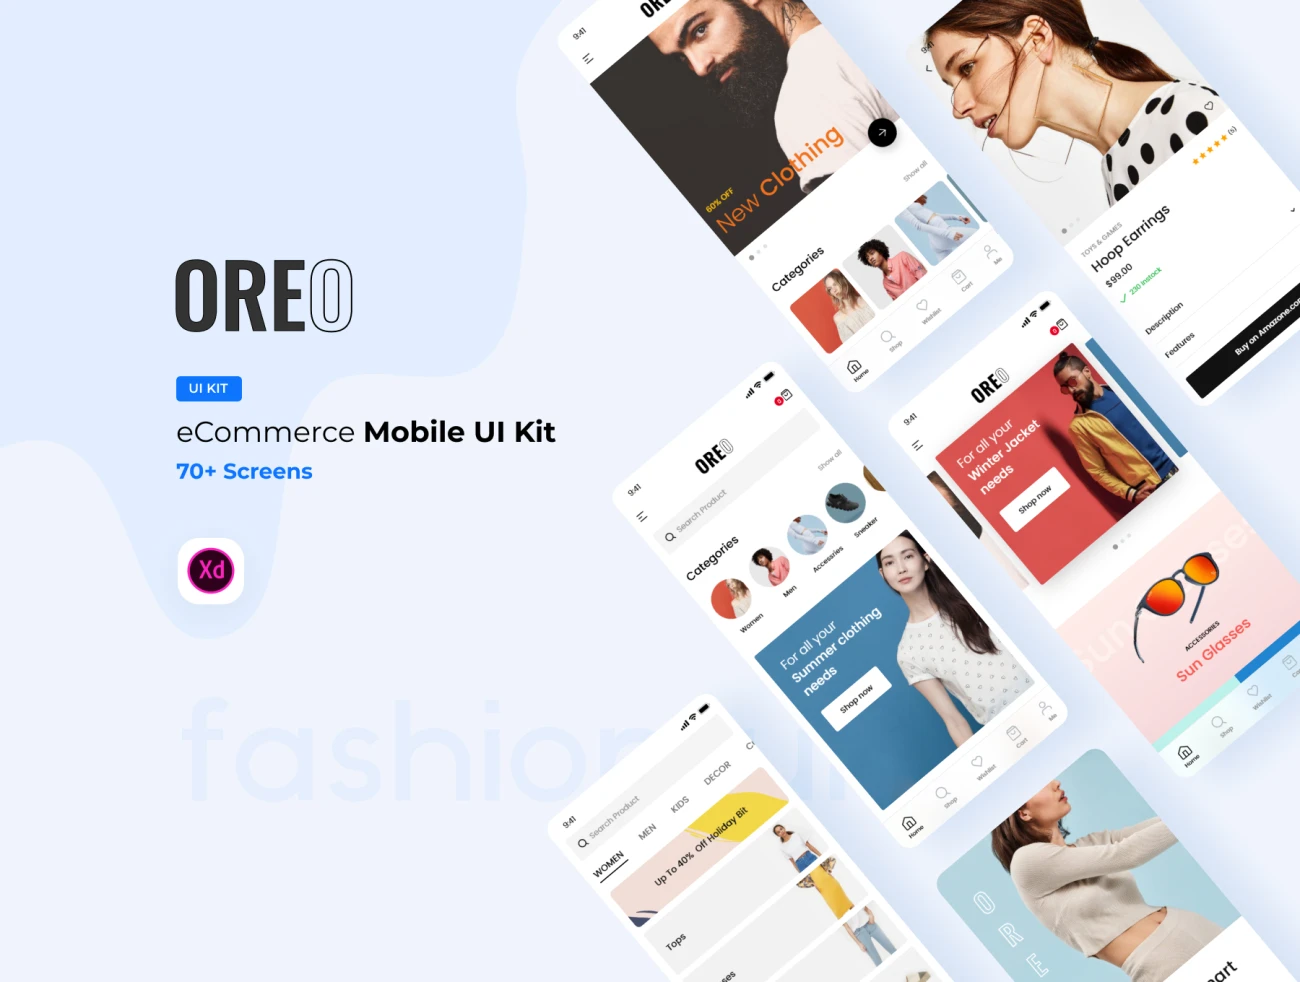 Oreo eCommerce Mobile UI Kit 电子商务移动用户界面套件-UI/UX-到位啦UI